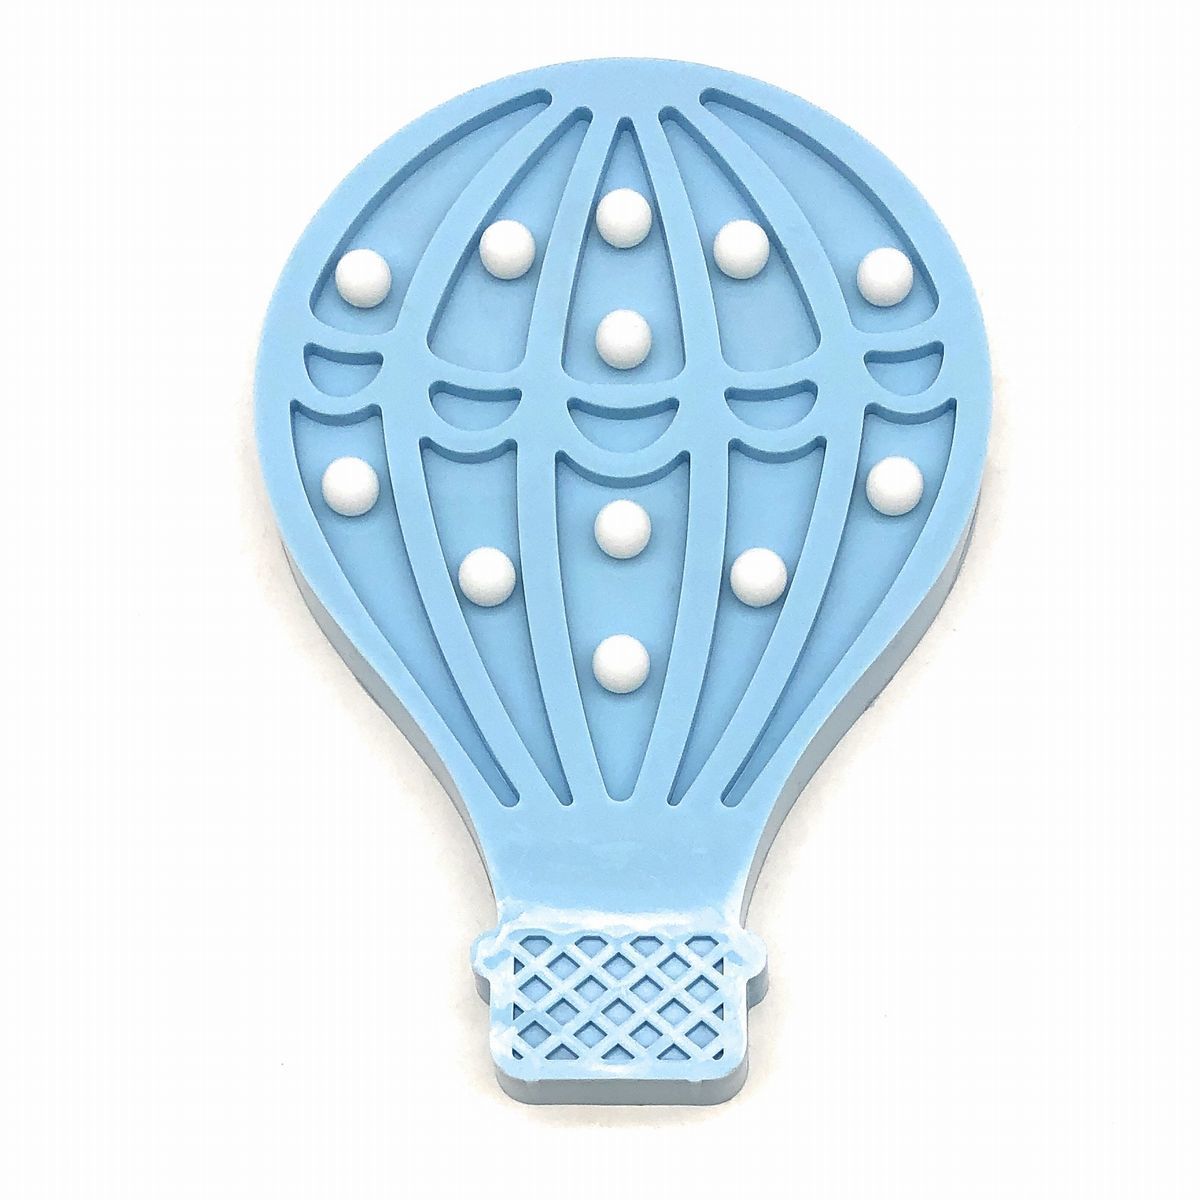 带有气球图案的廉价壁挂物品, 柔和的色彩, LED灯, 电池供电(蓝色), 手工制品, 内部的, 杂货, 装饰品, 目的